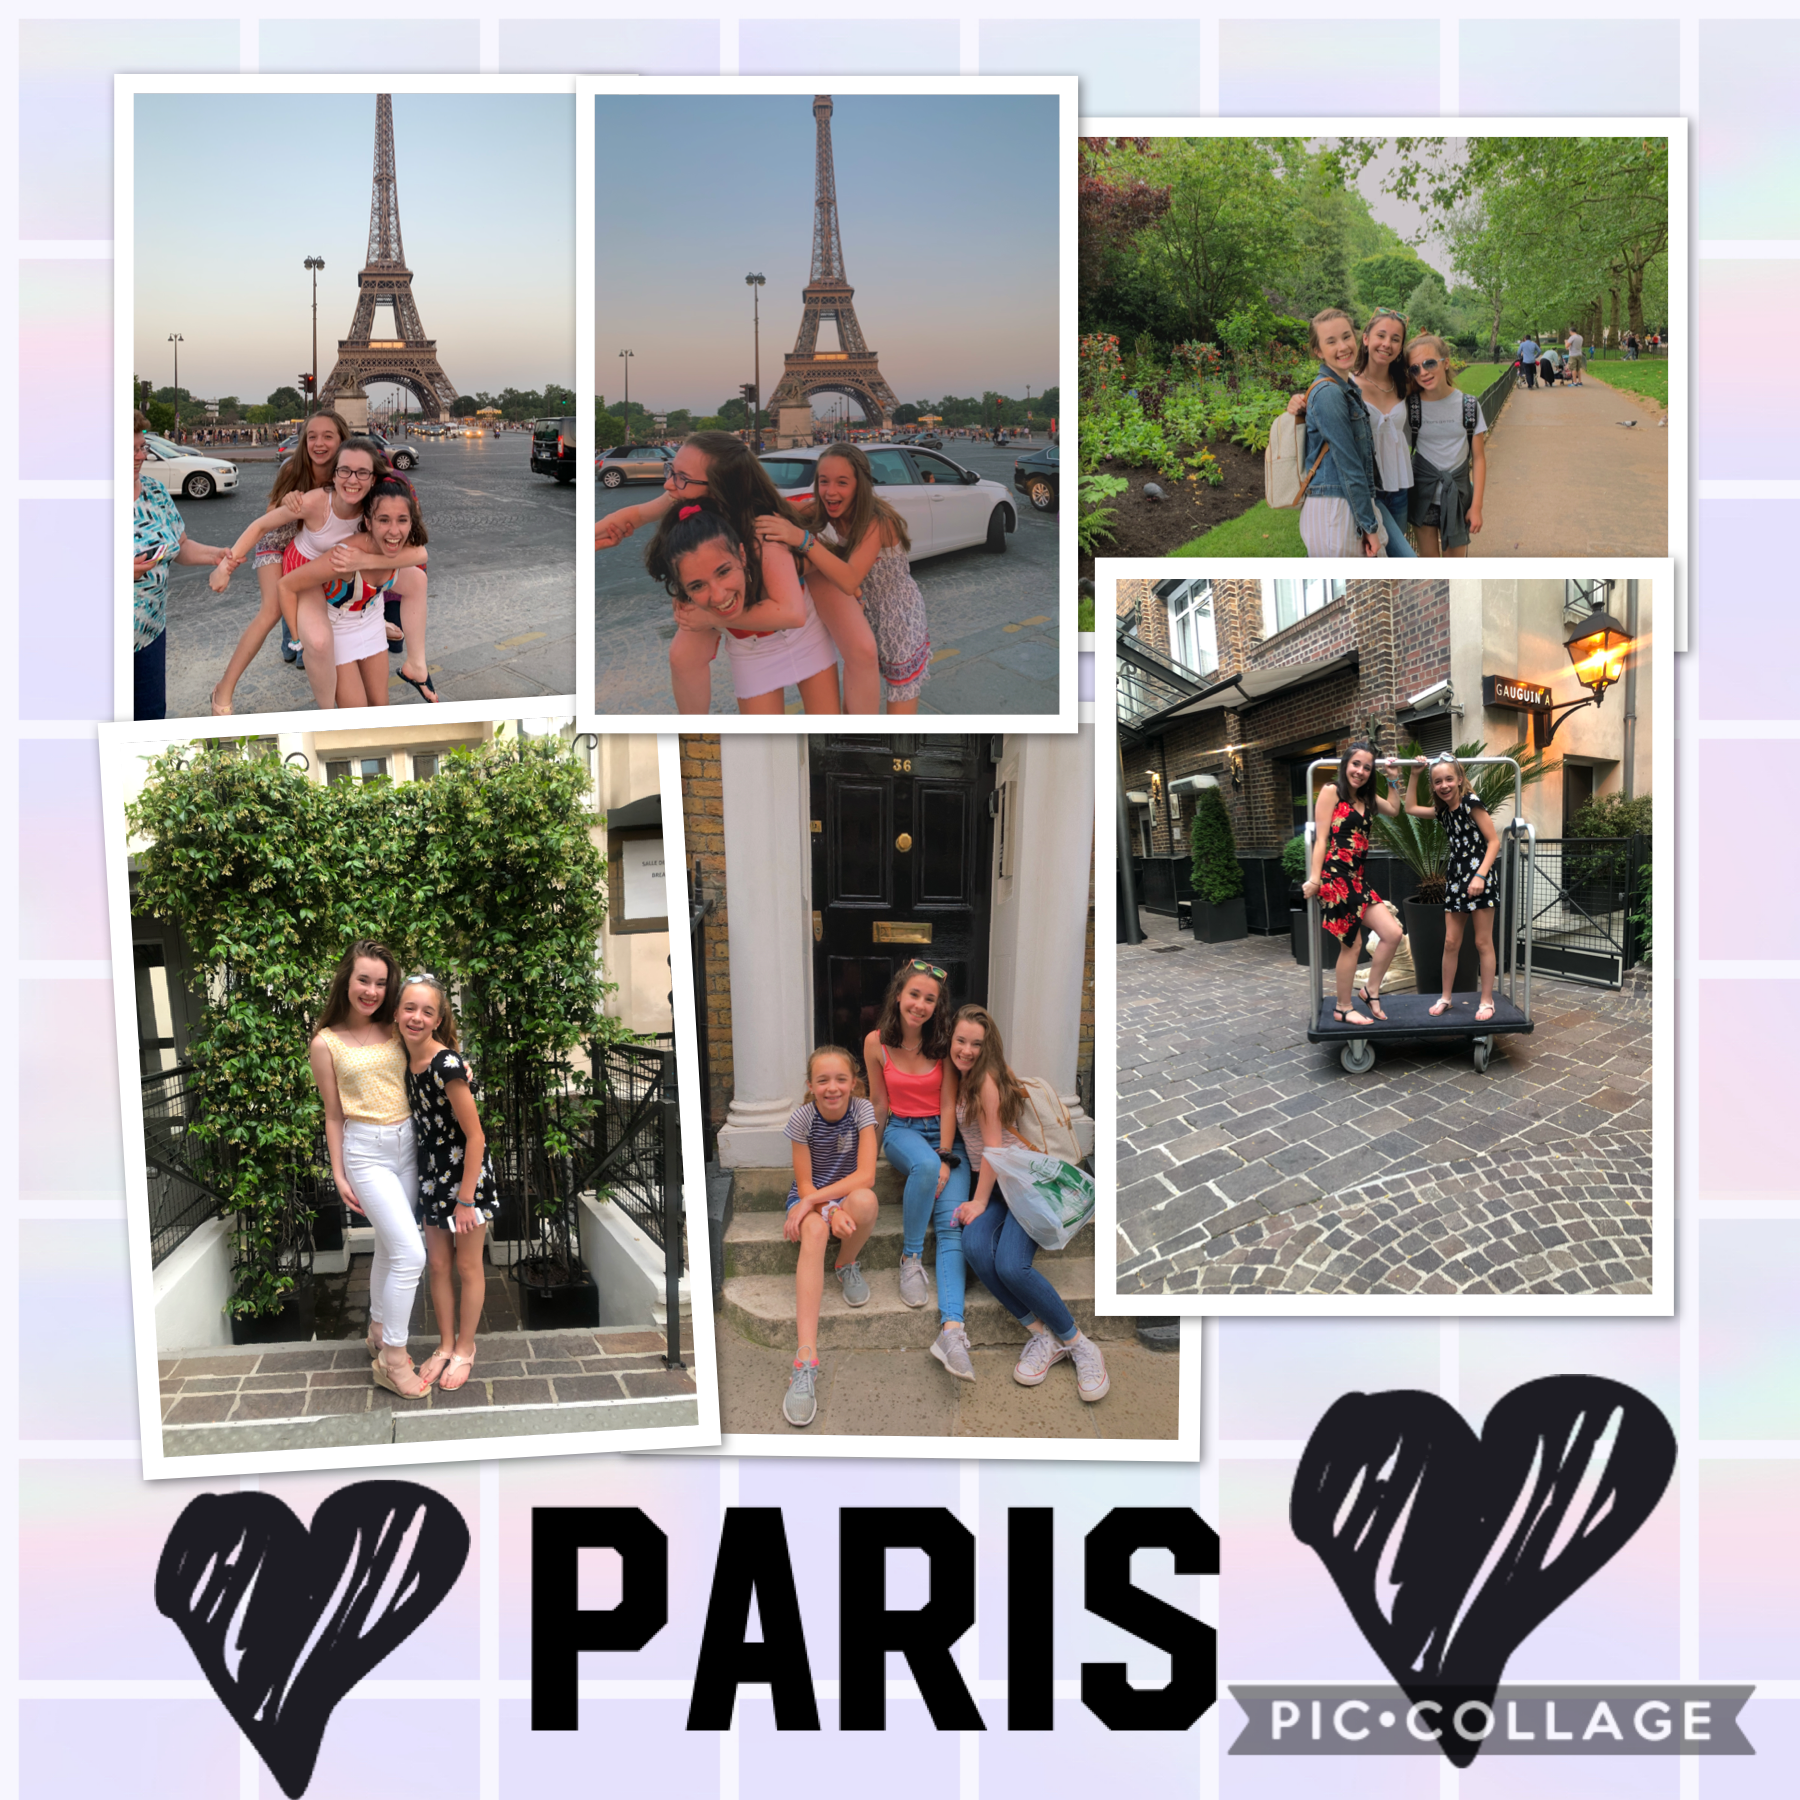 Paris summer 2019 